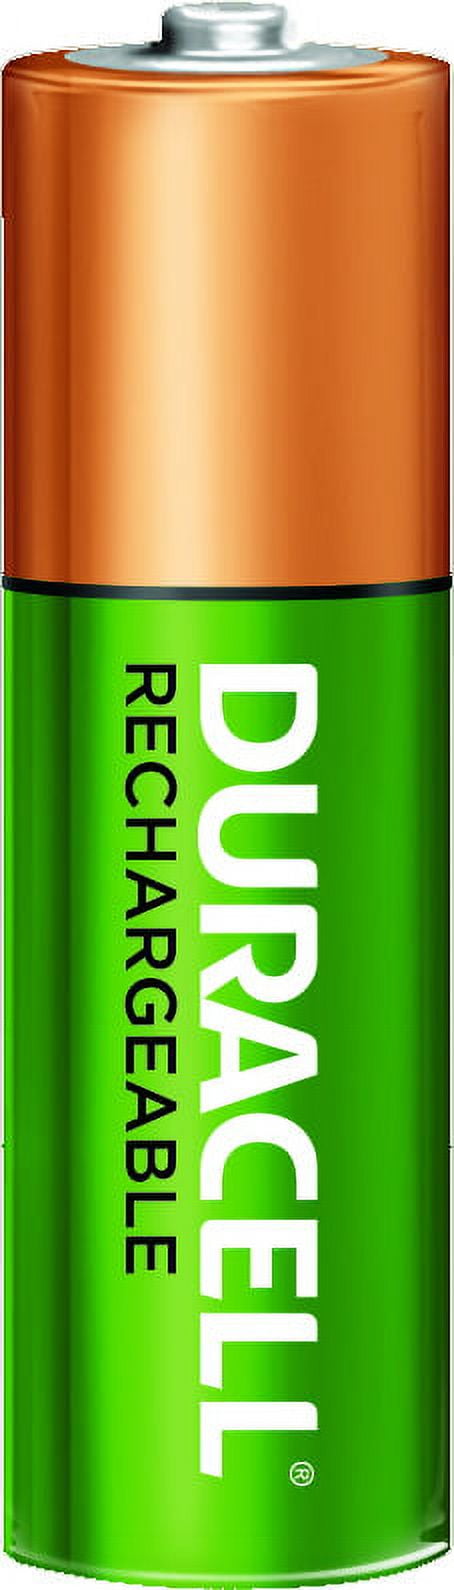 Ensemble de piles rechargeables Duracell avec 4 piles AA et 4 piles AAA -  Deliver-Grocery Online (DG), 9354-2793 Québec Inc.